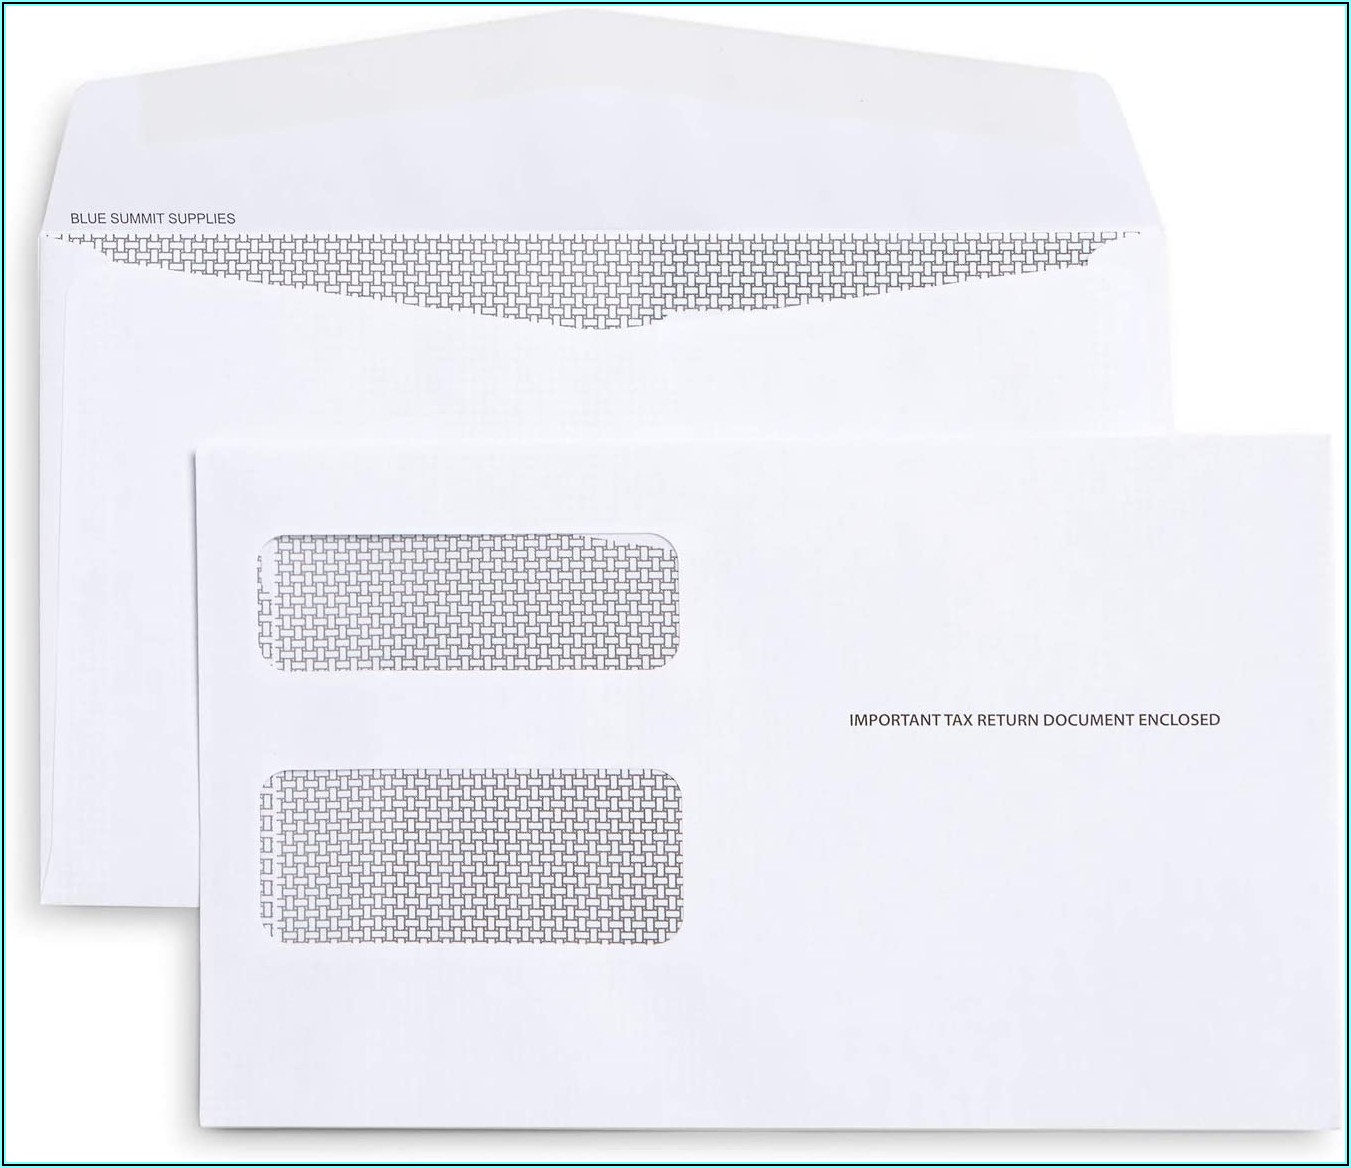 Print Envelopes From Quickbooks 2017